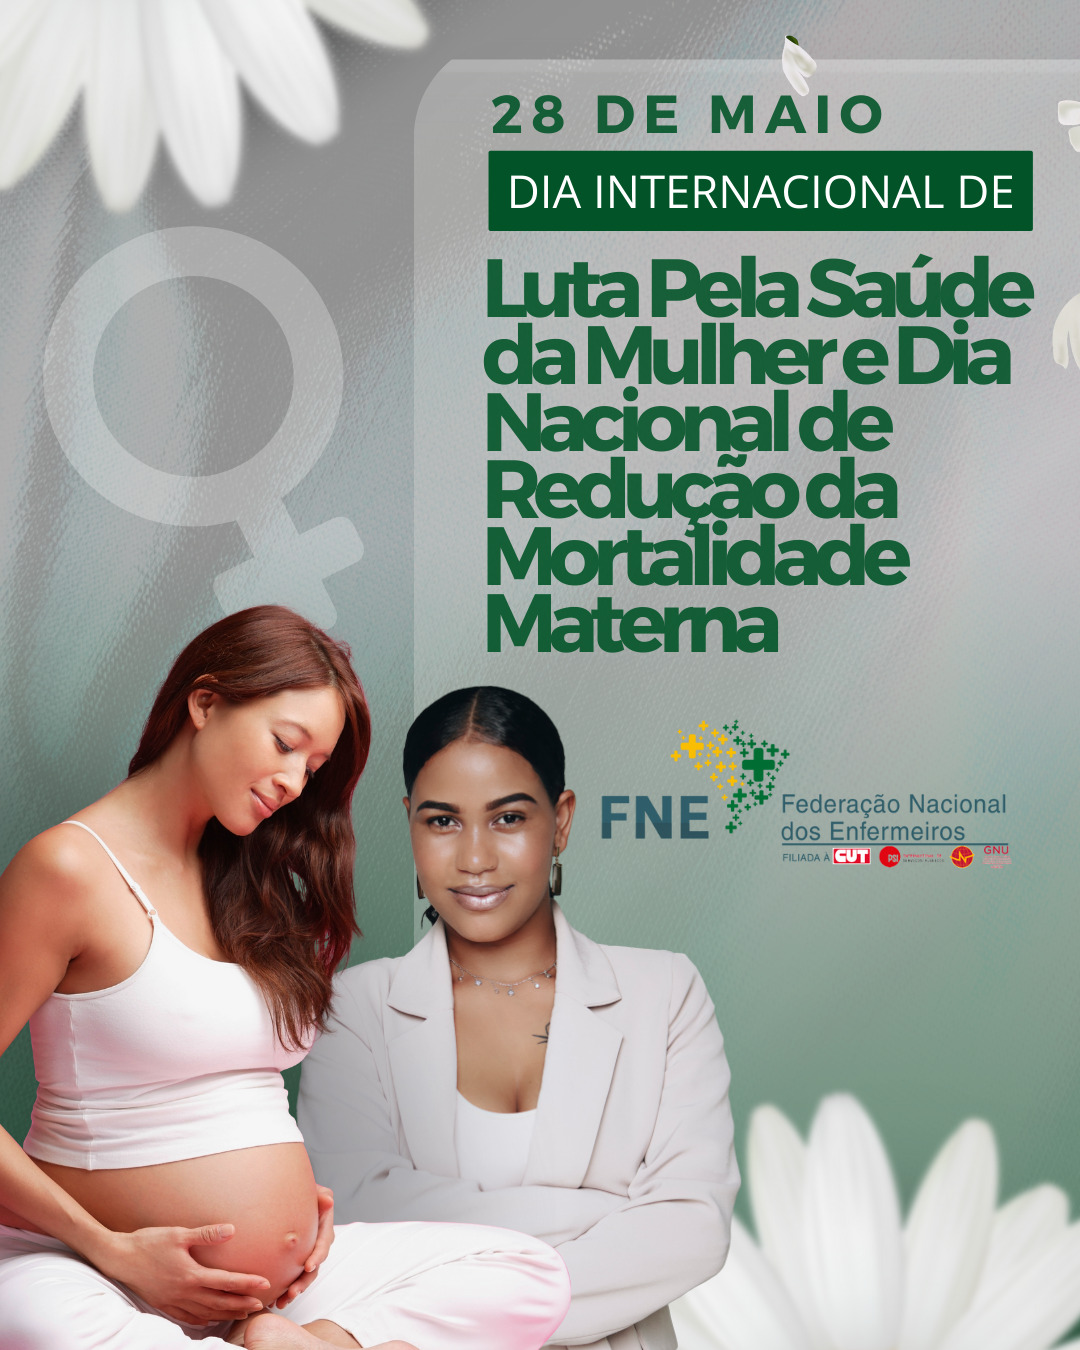 28 de maio: Dia Internacional de Luta Pela Saúde da Mulher e Dia Nacional de Redução da Mortalidade Materna